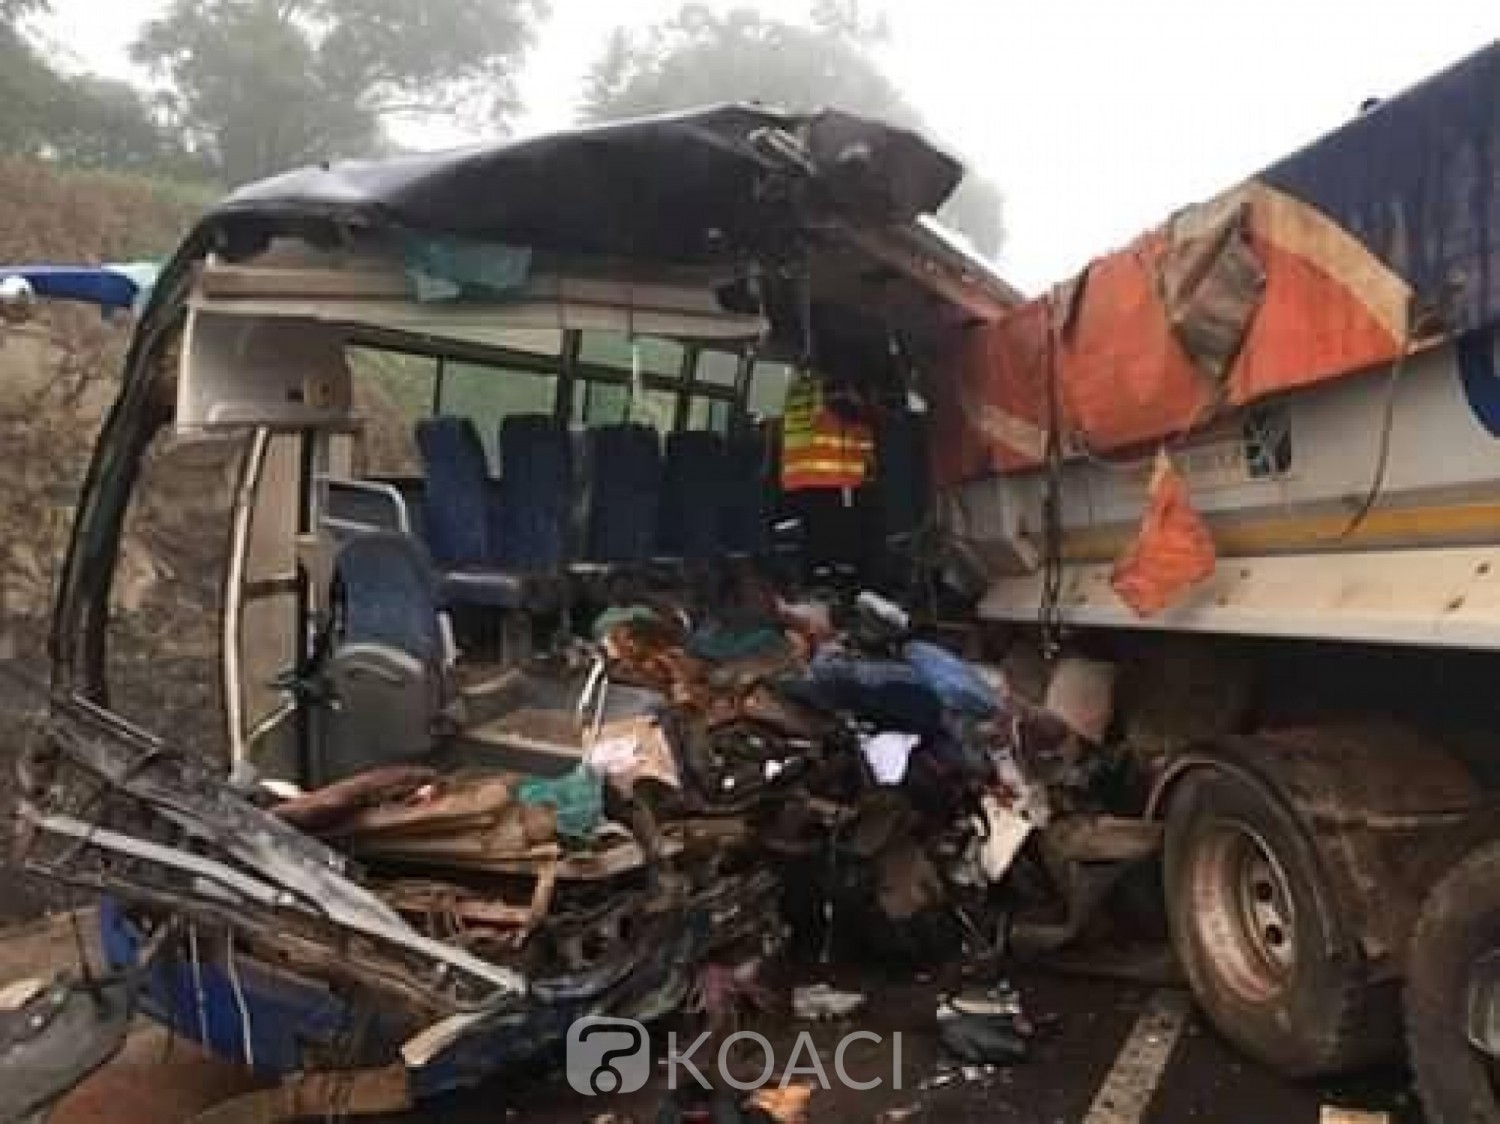 Côte d'Ivoire: Grave accident sur l'autoroute du nord, au moins 14 morts et des blessés graves